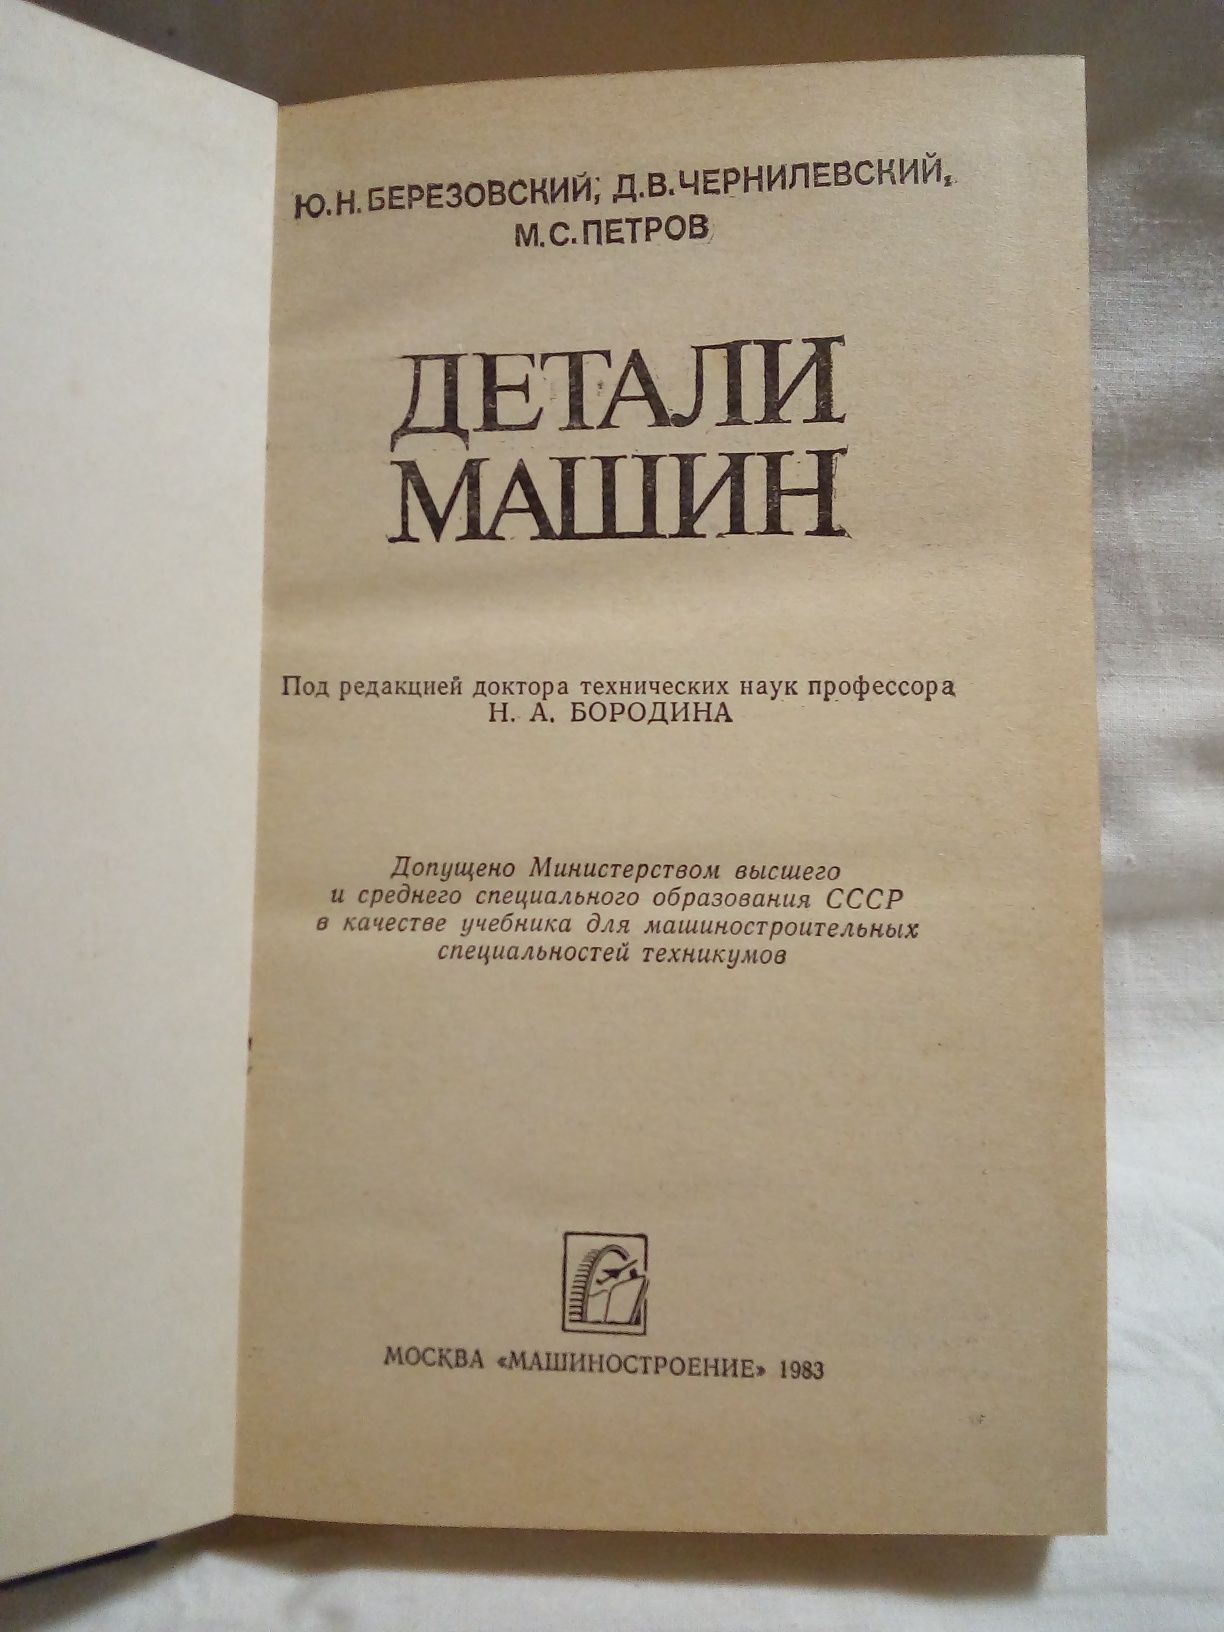 Книга Ю. Н. Березовский "Детали машин".